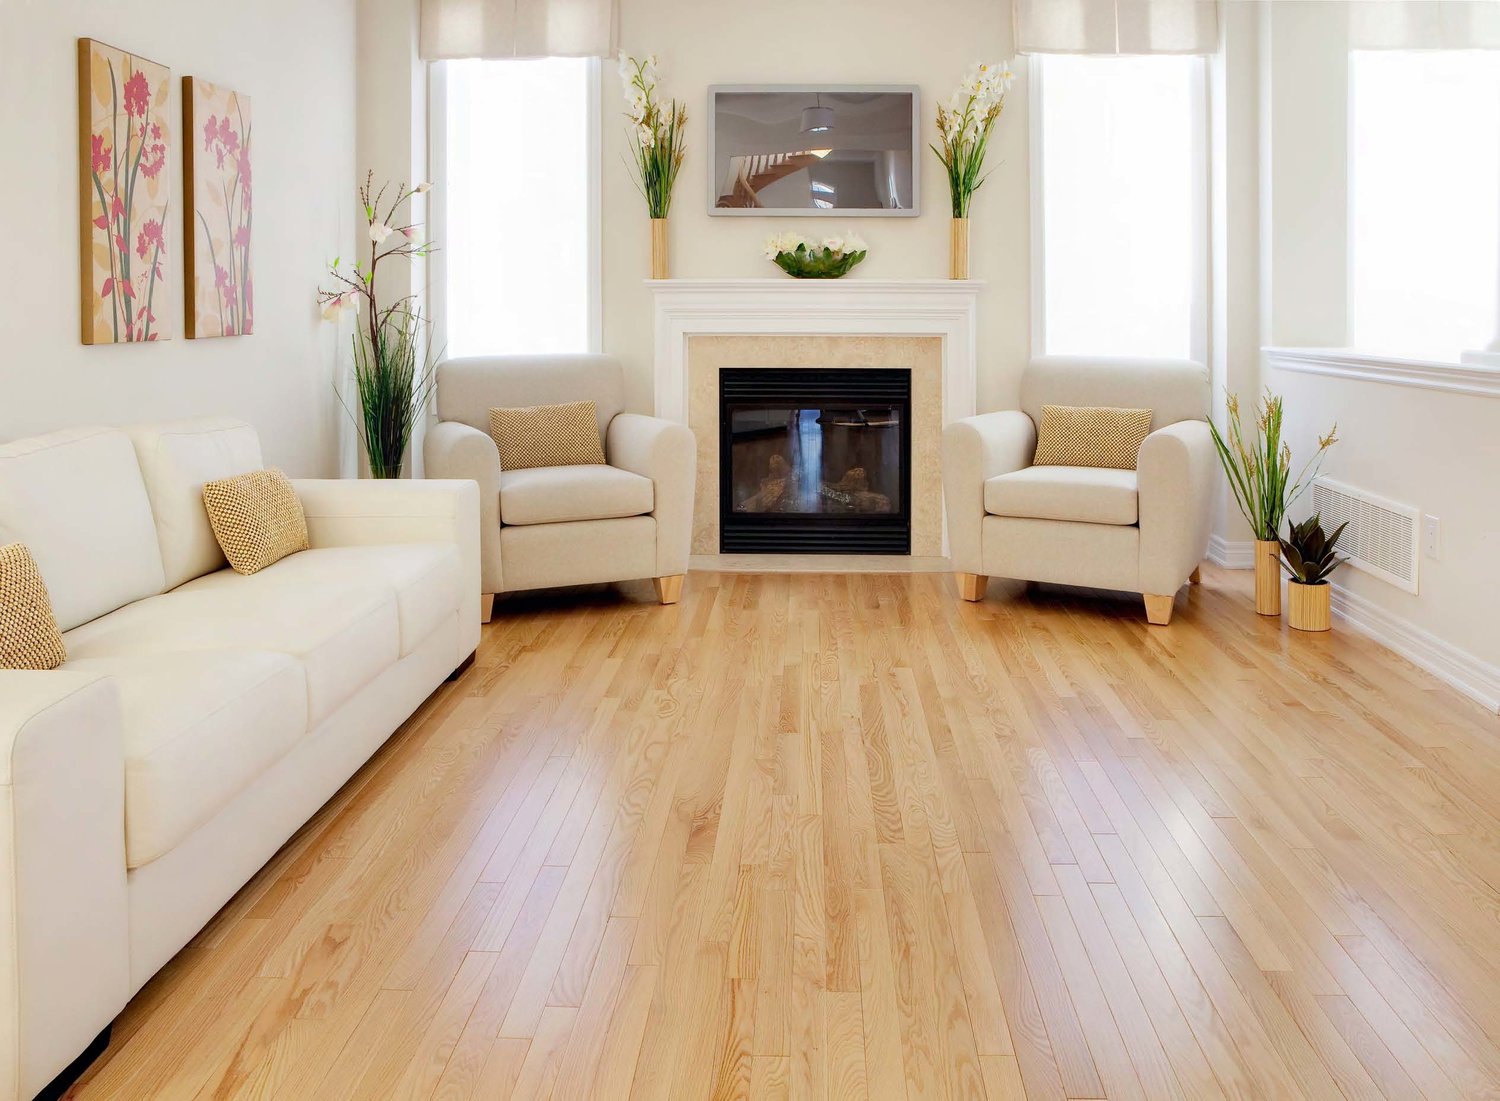 Living Room With Oak Hardwood Floor